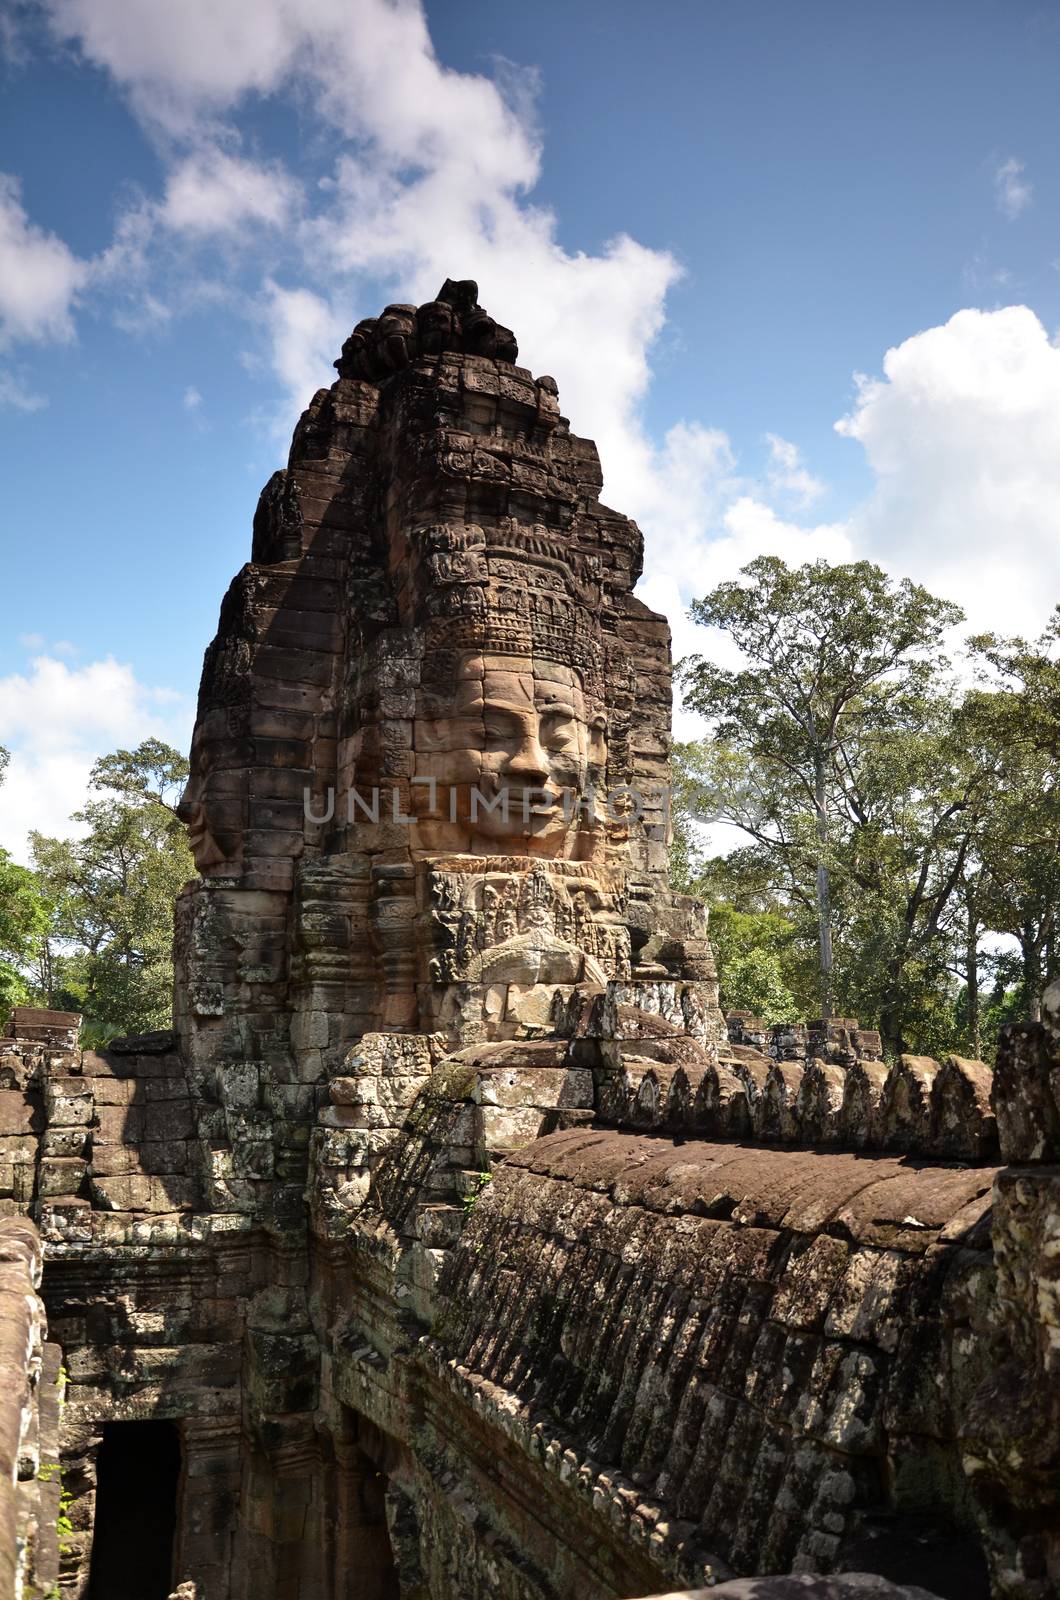 Ancient Bayon Temple At Angkor Wat, Siem Reap, Cambodia